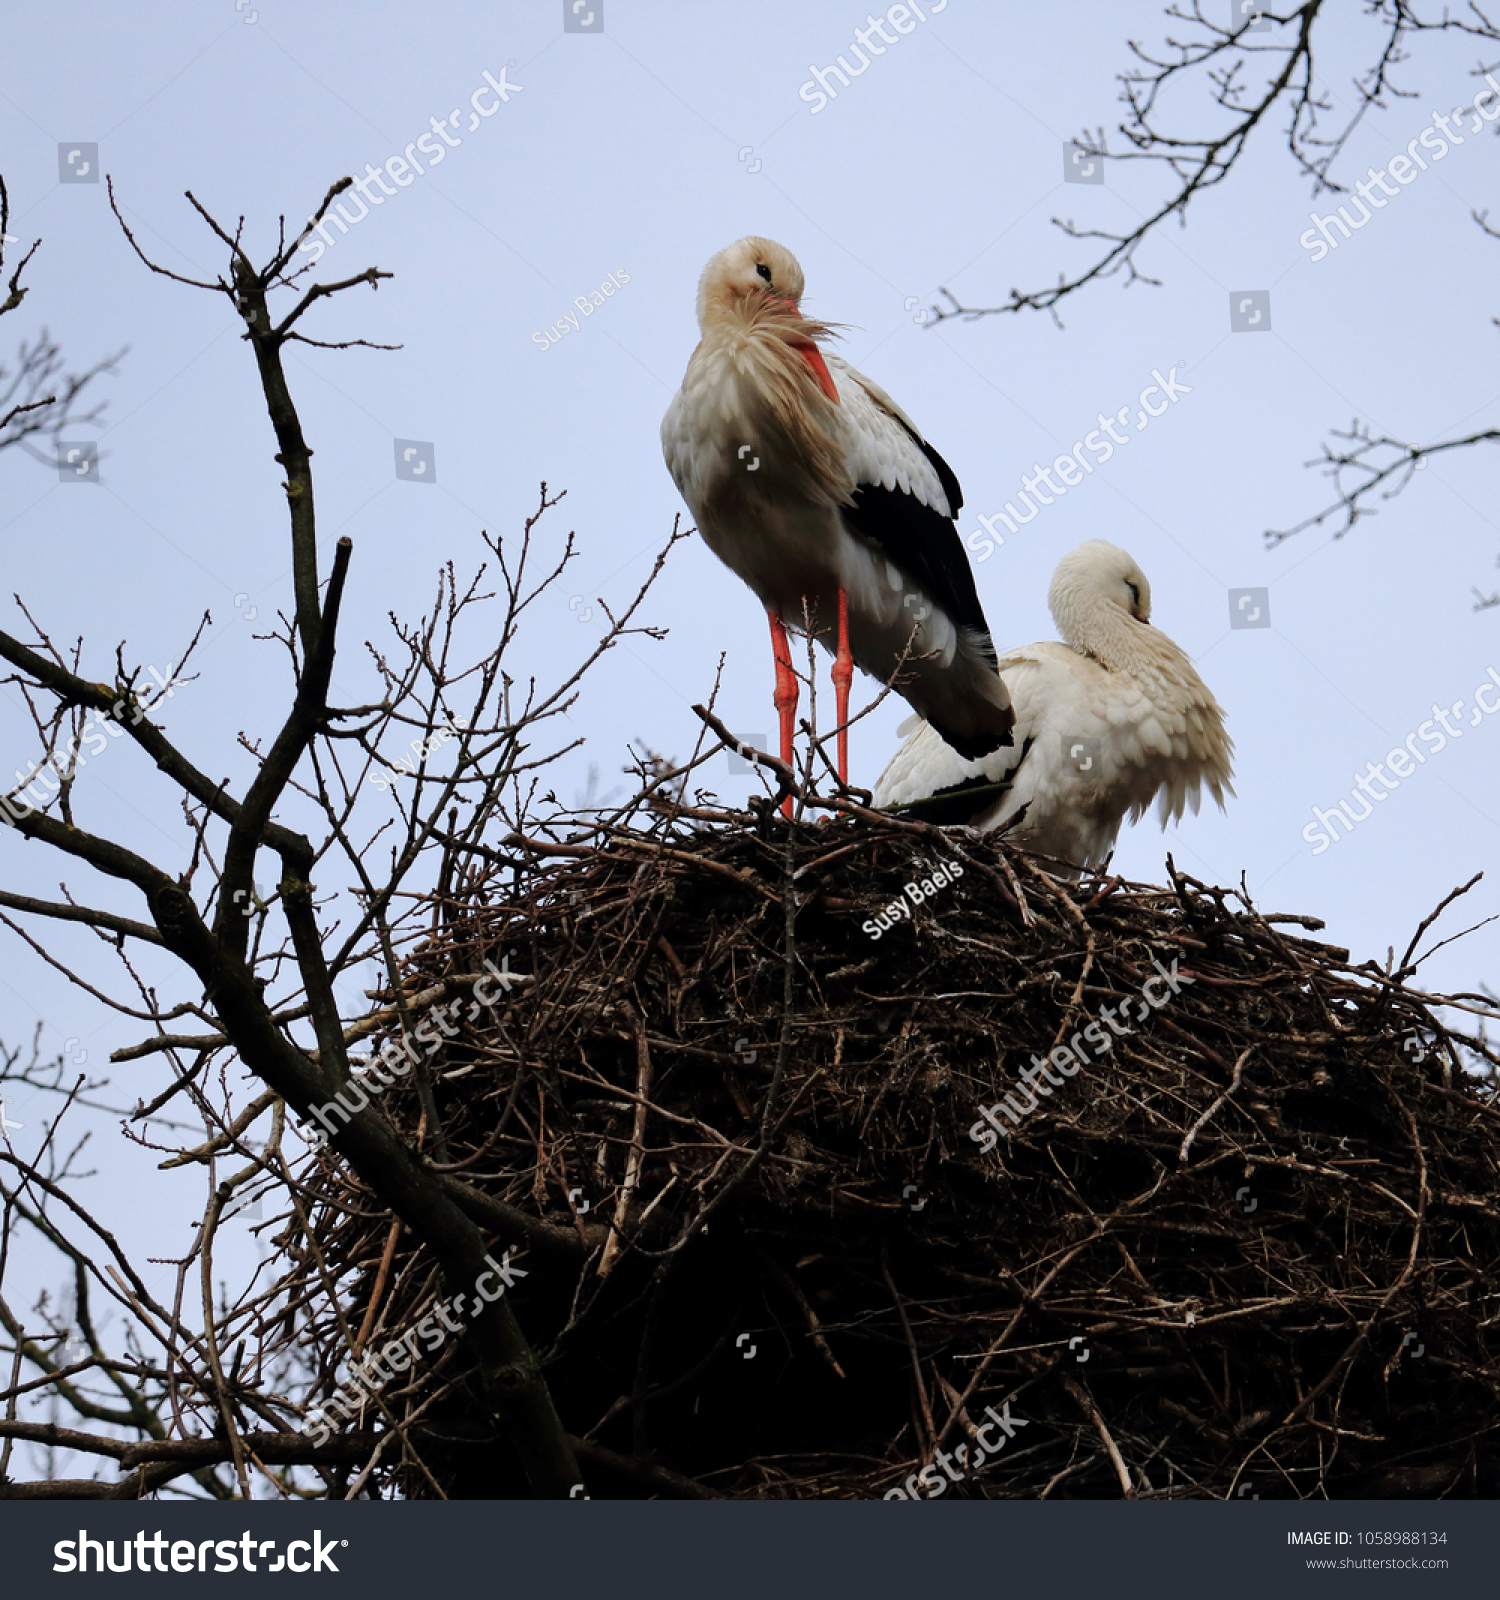 storks on a nest #1058988134